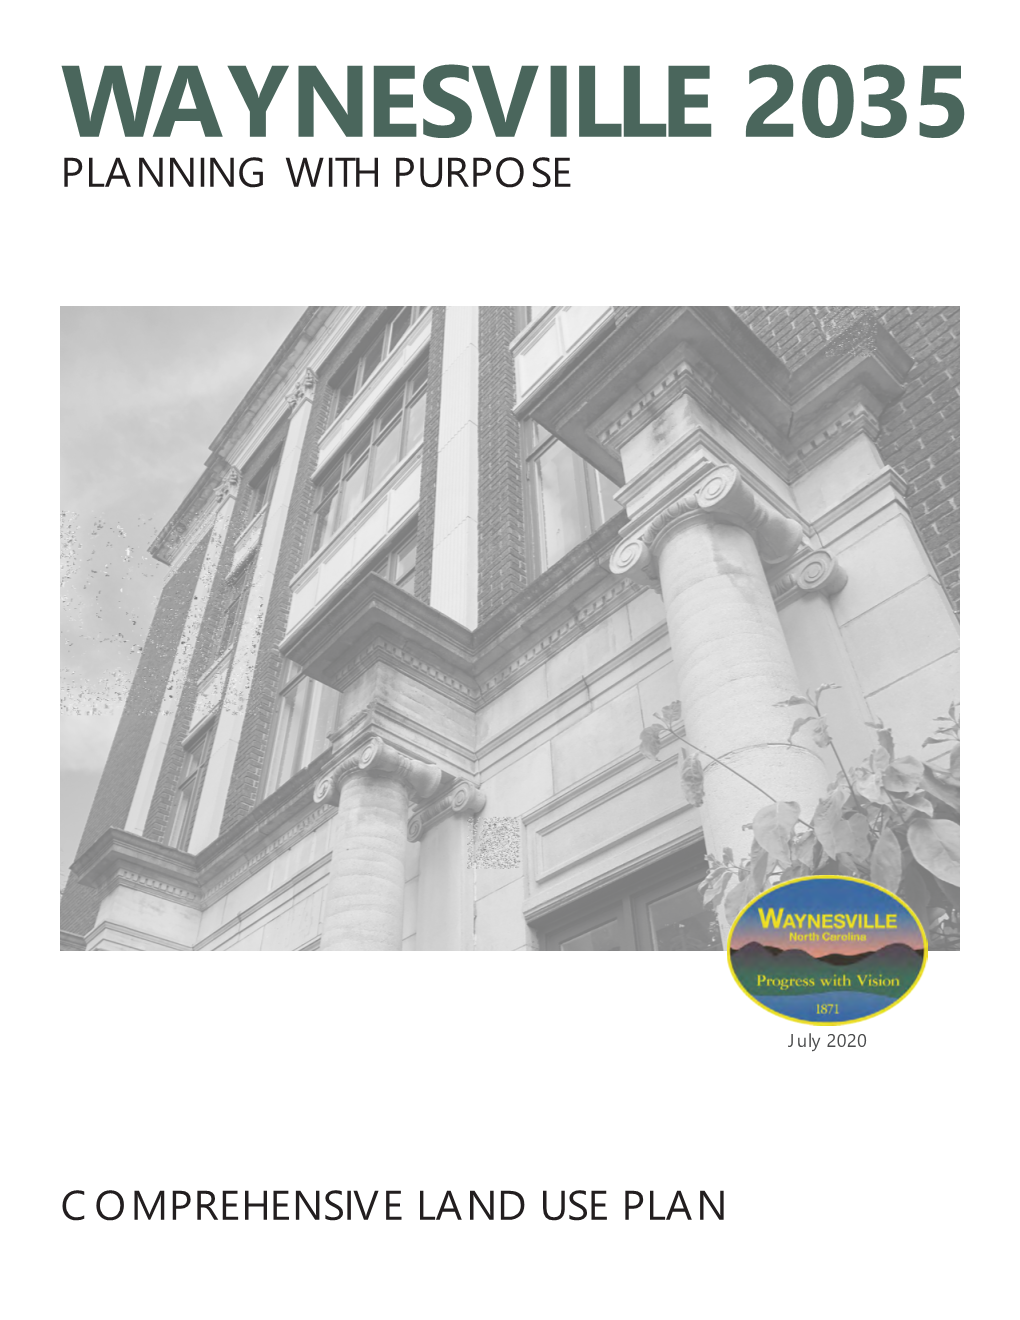 Waynesville 2035 Planning with Purpose